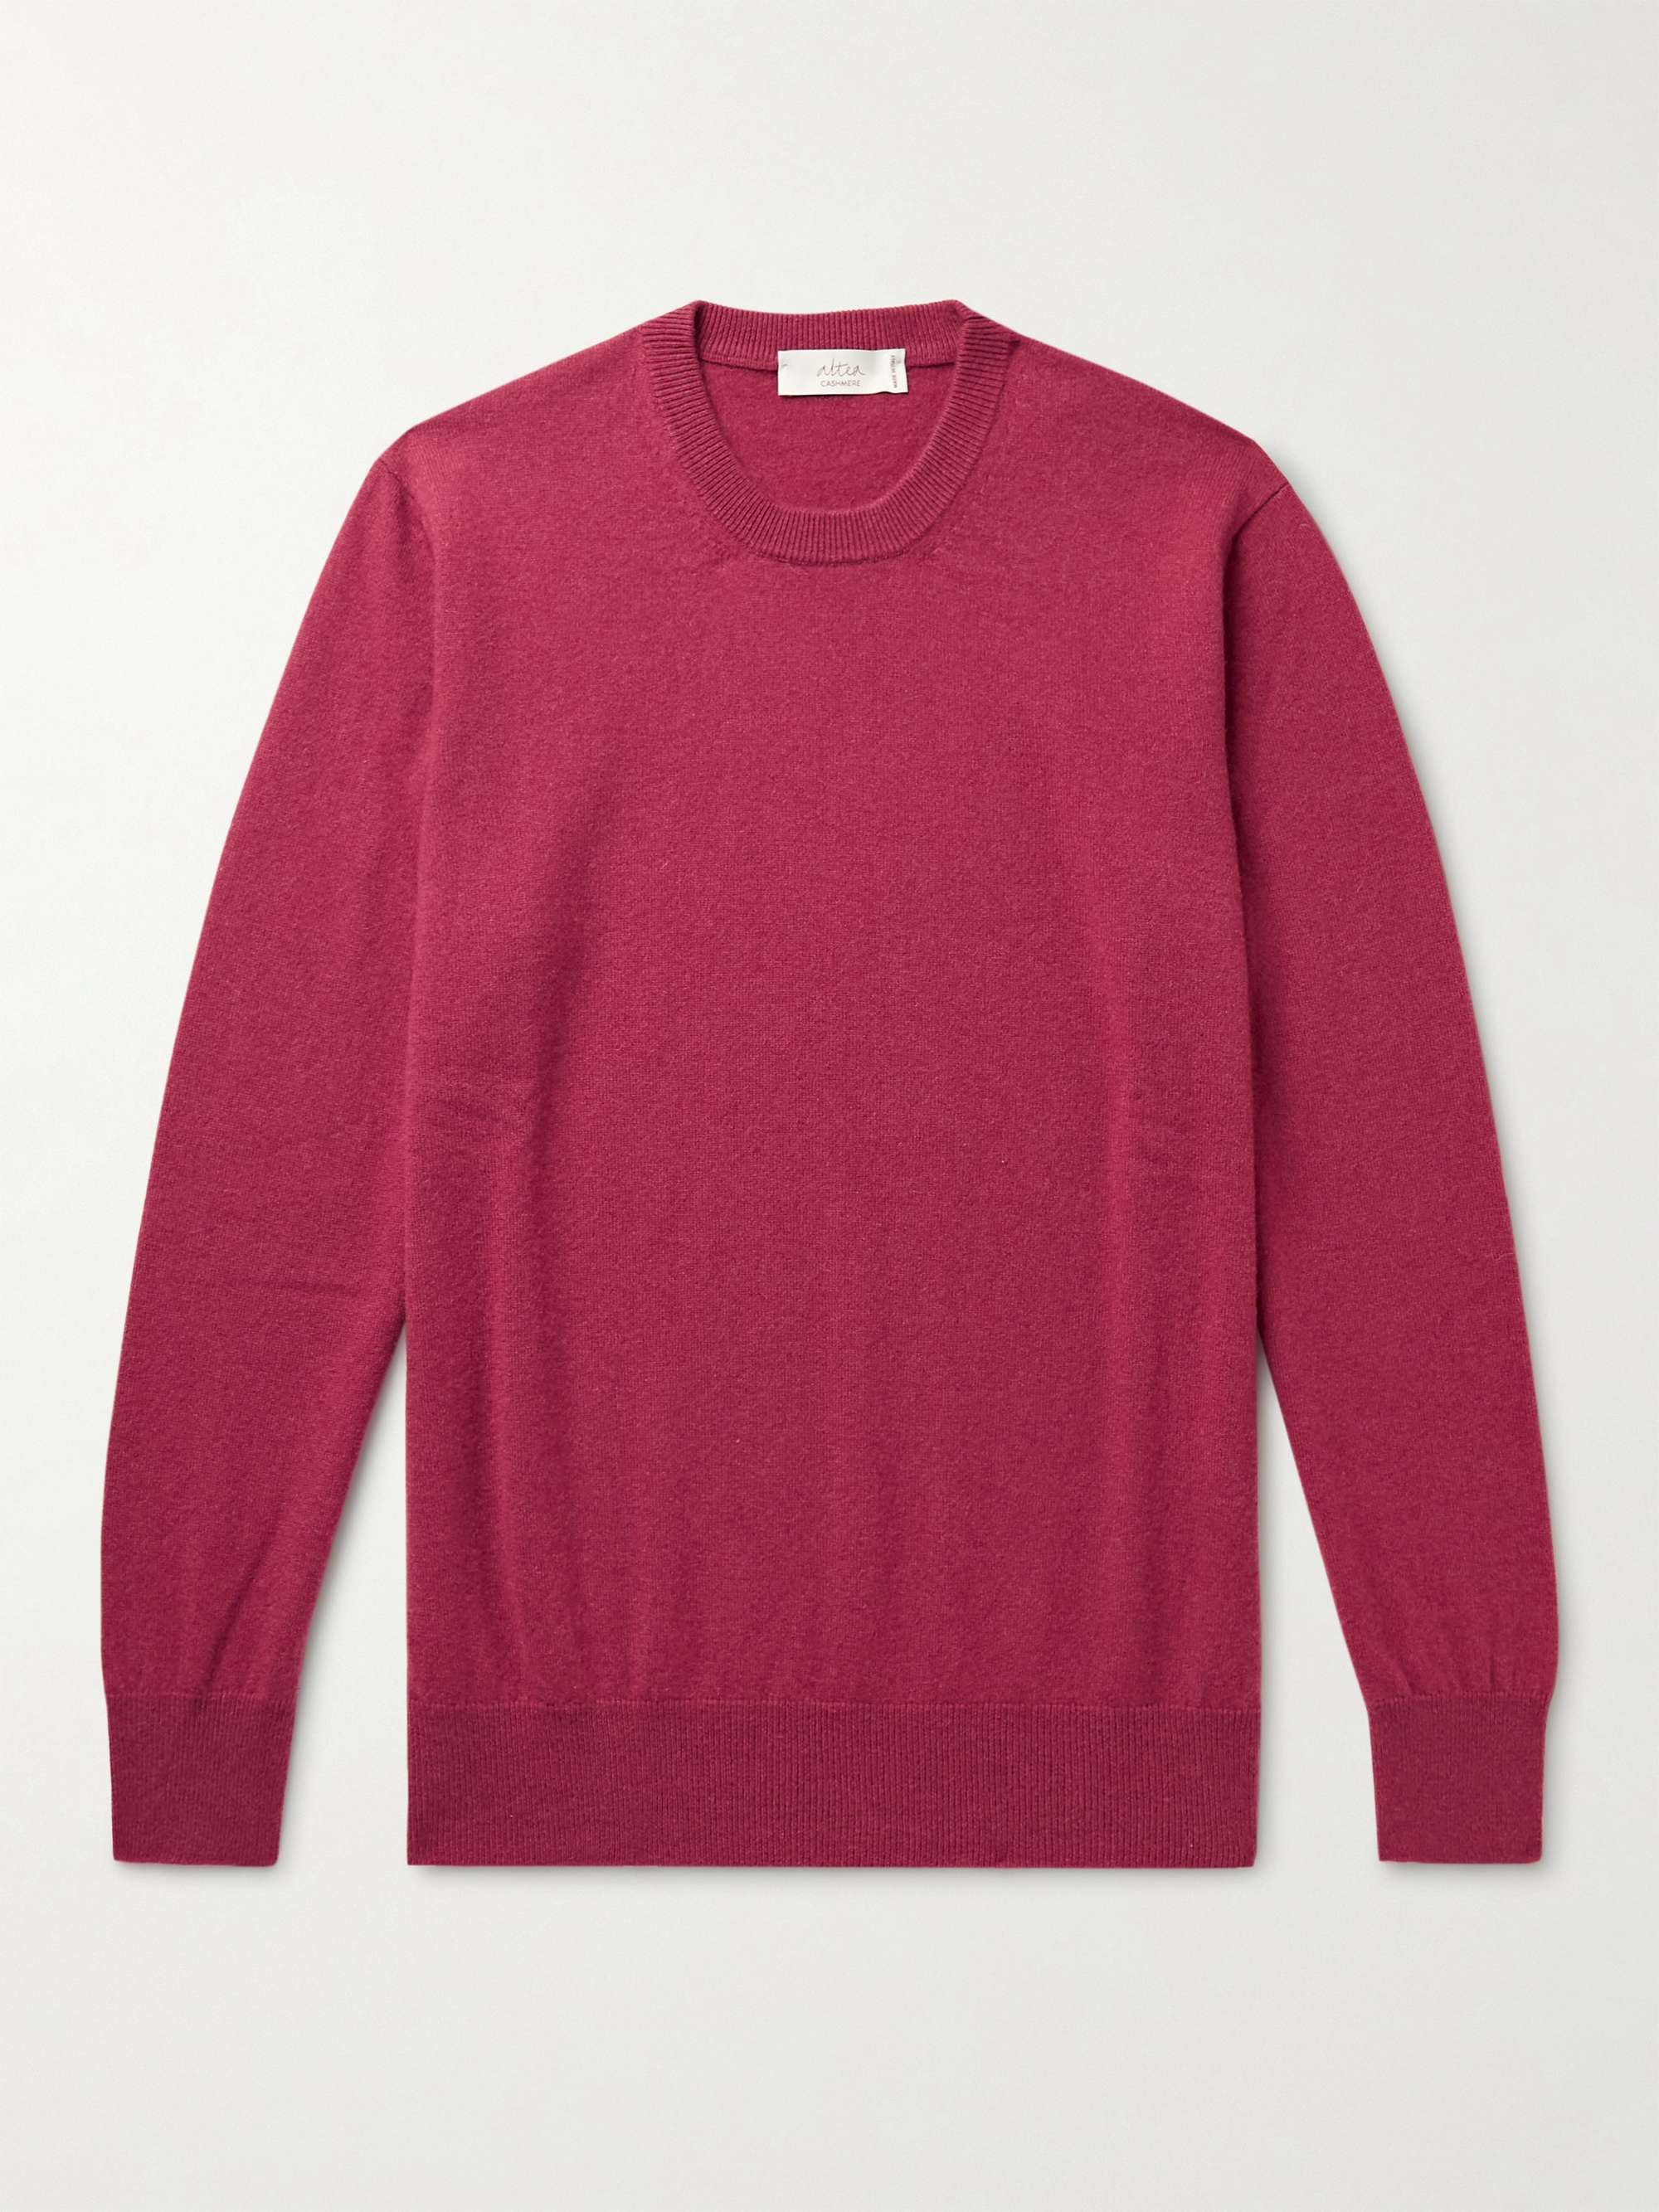 ALTEA Cashmere Sweater